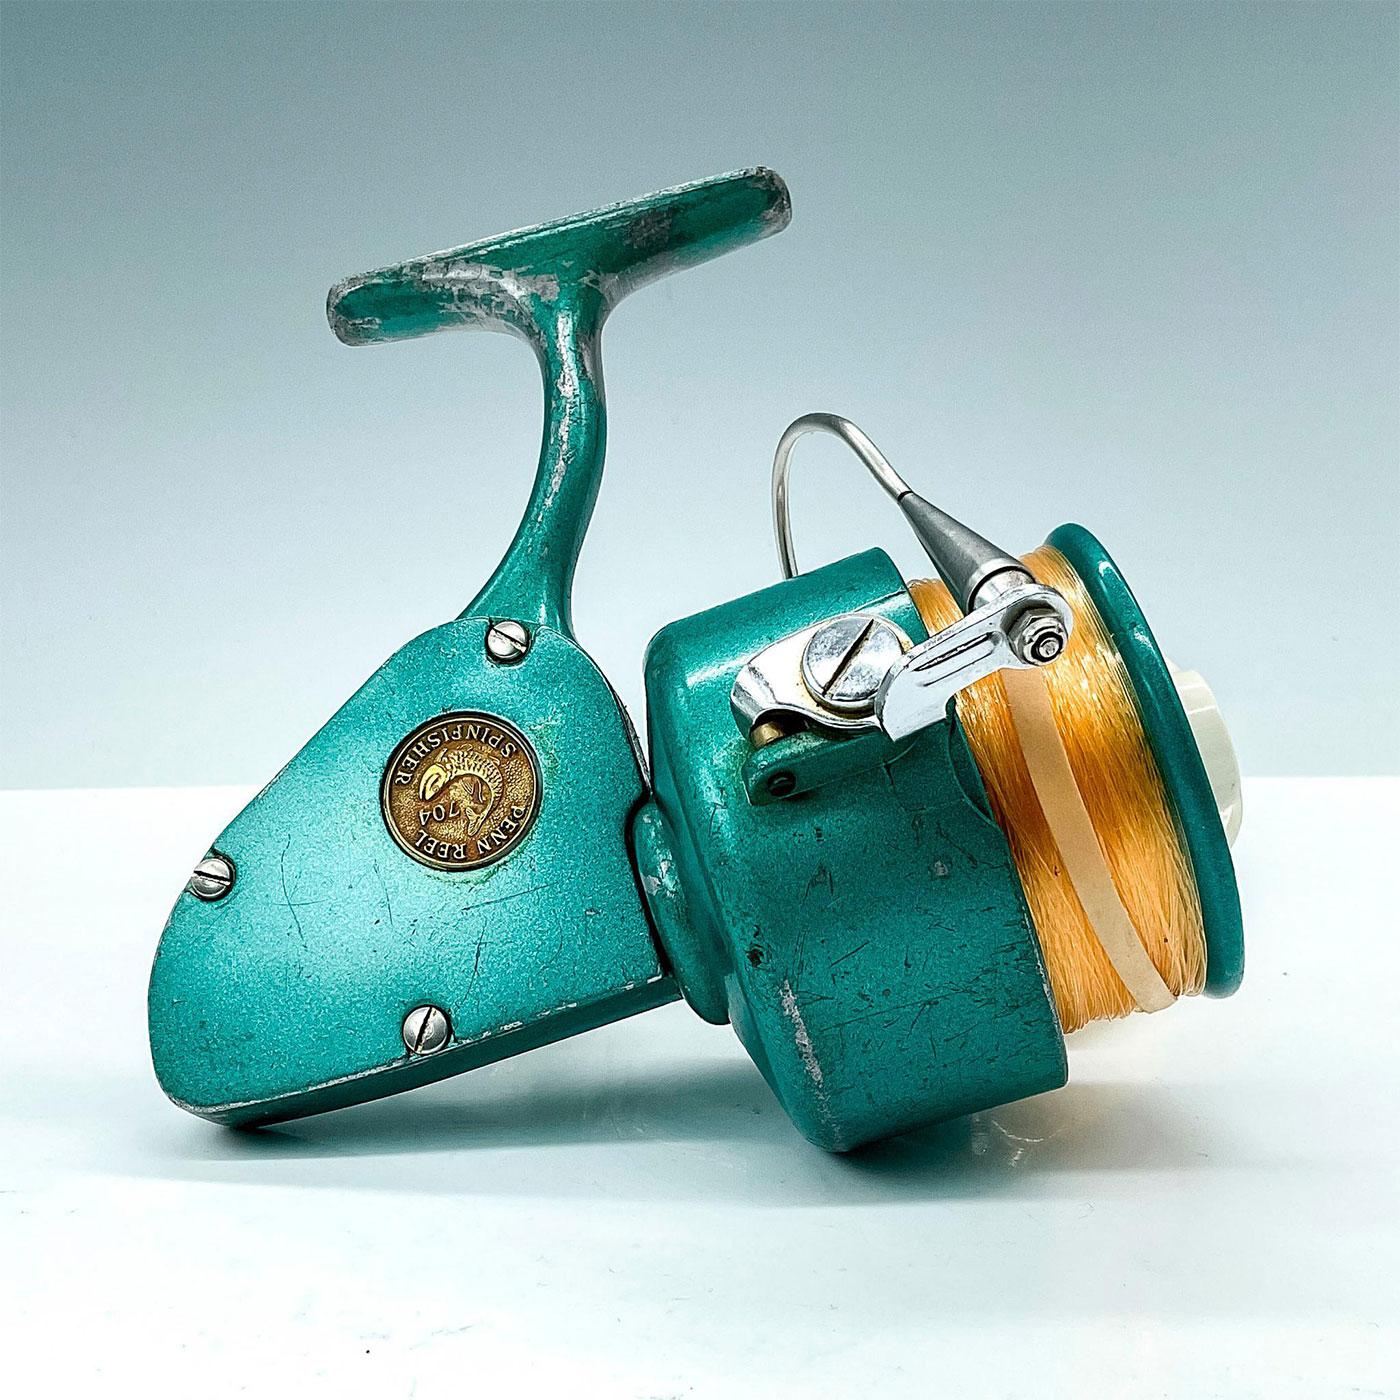 Penn 704 (Greenie) vintage spinning reel 